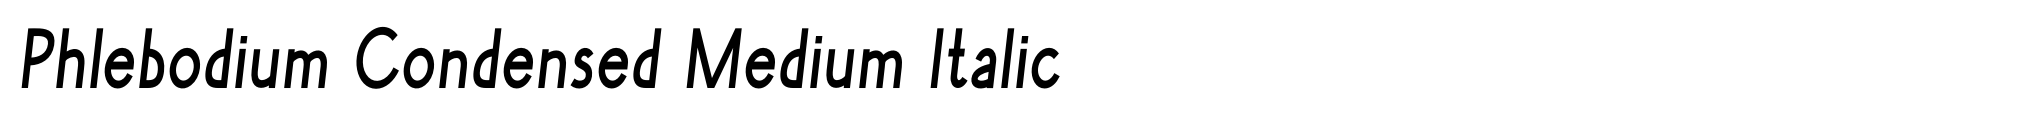 Phlebodium Condensed Medium Italic image